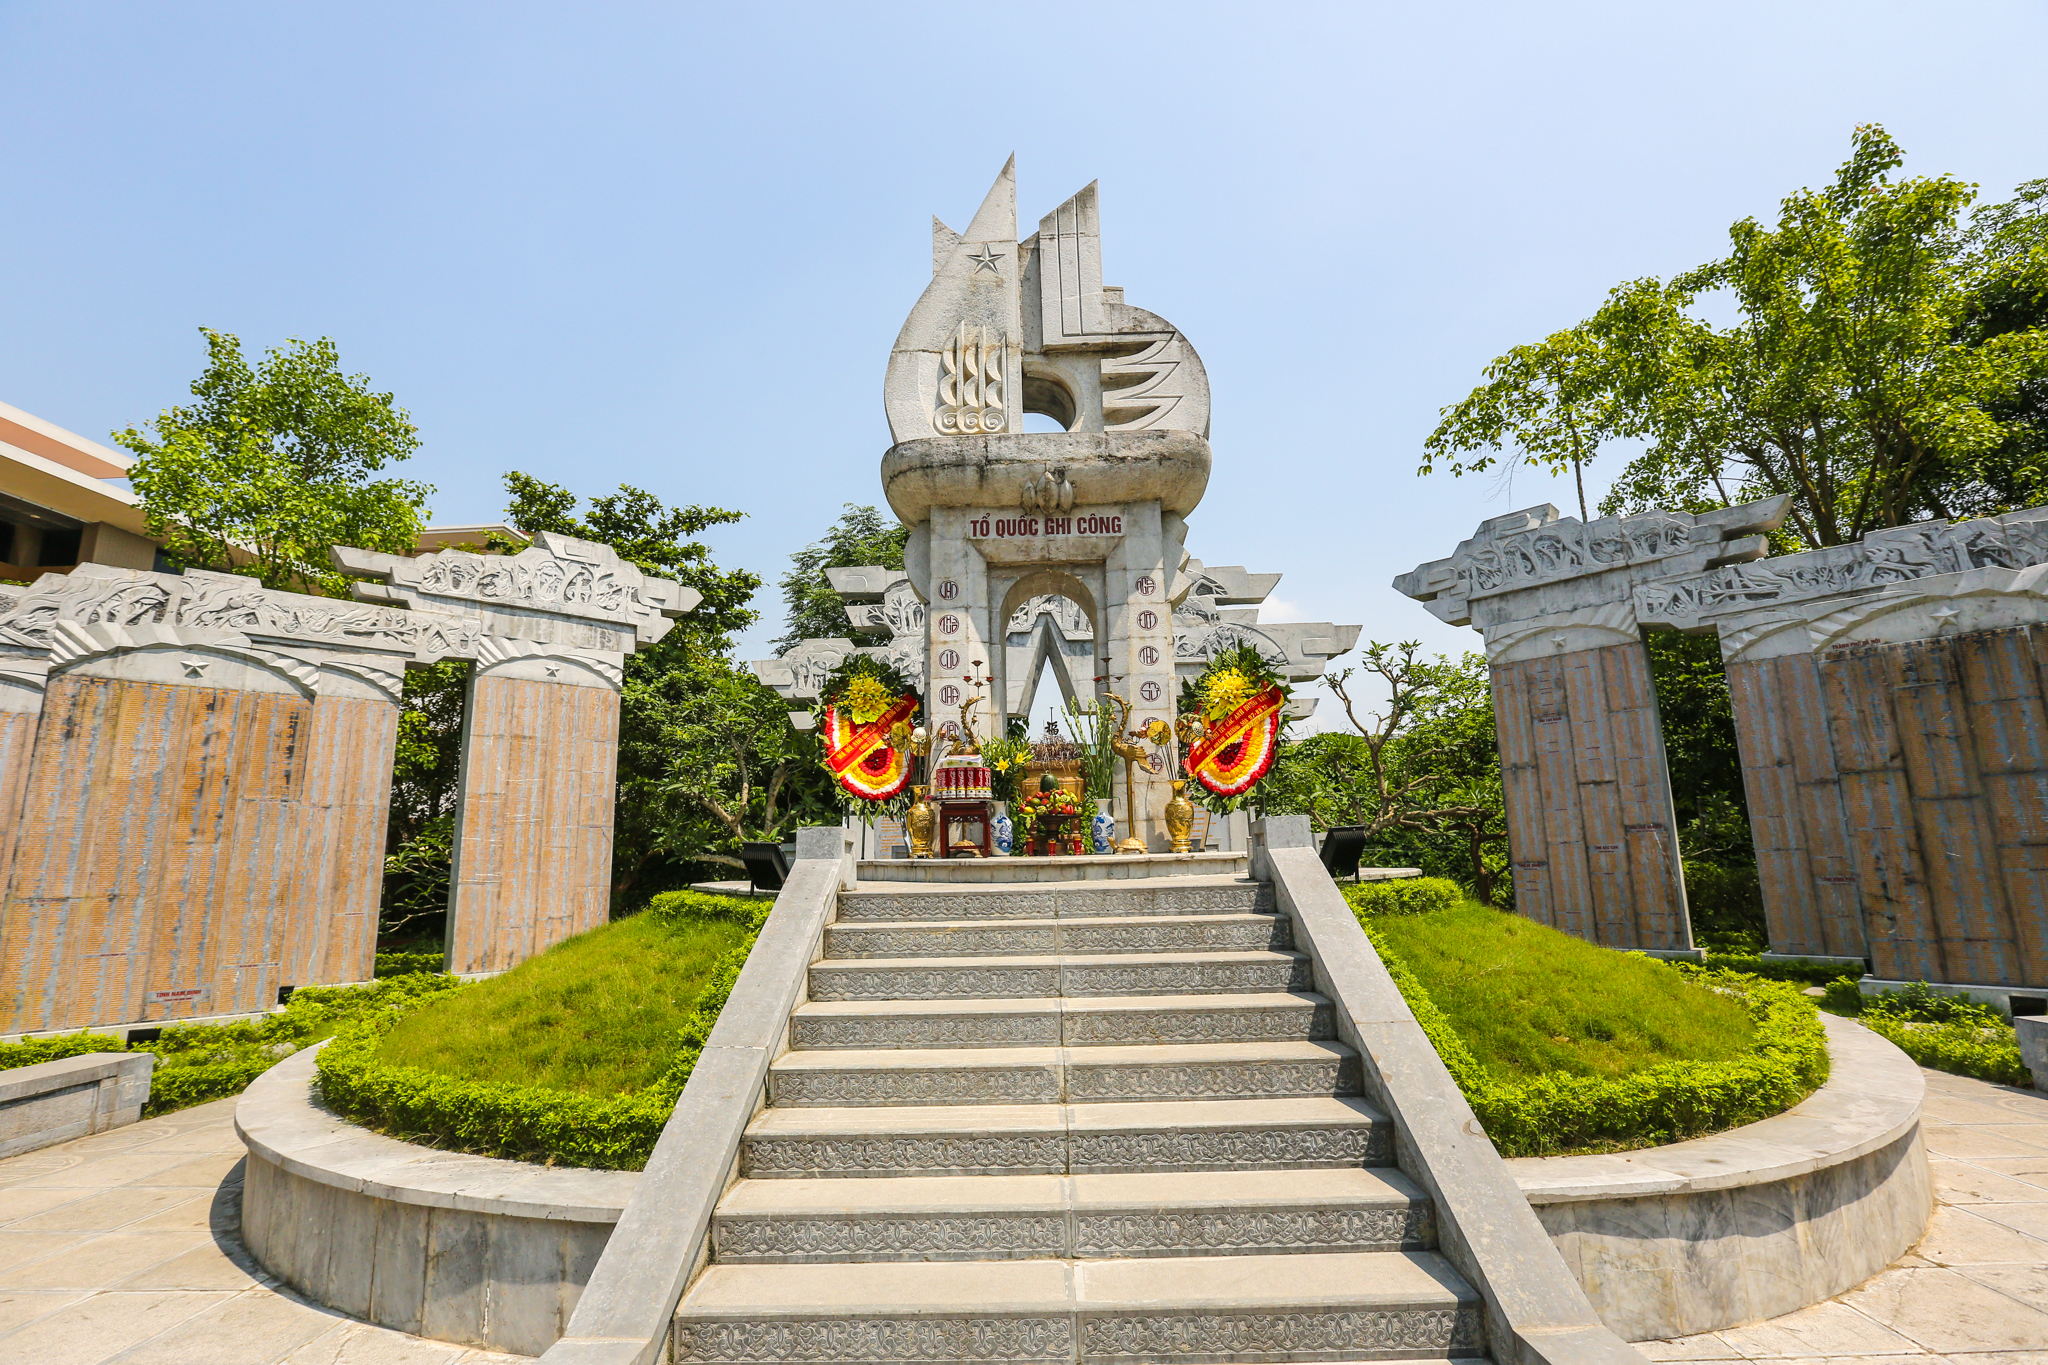 Bảo tàng có khuôn viên rộng trên 20.000m2, nằm ở phía Tây thủ đô Hà Nội. 